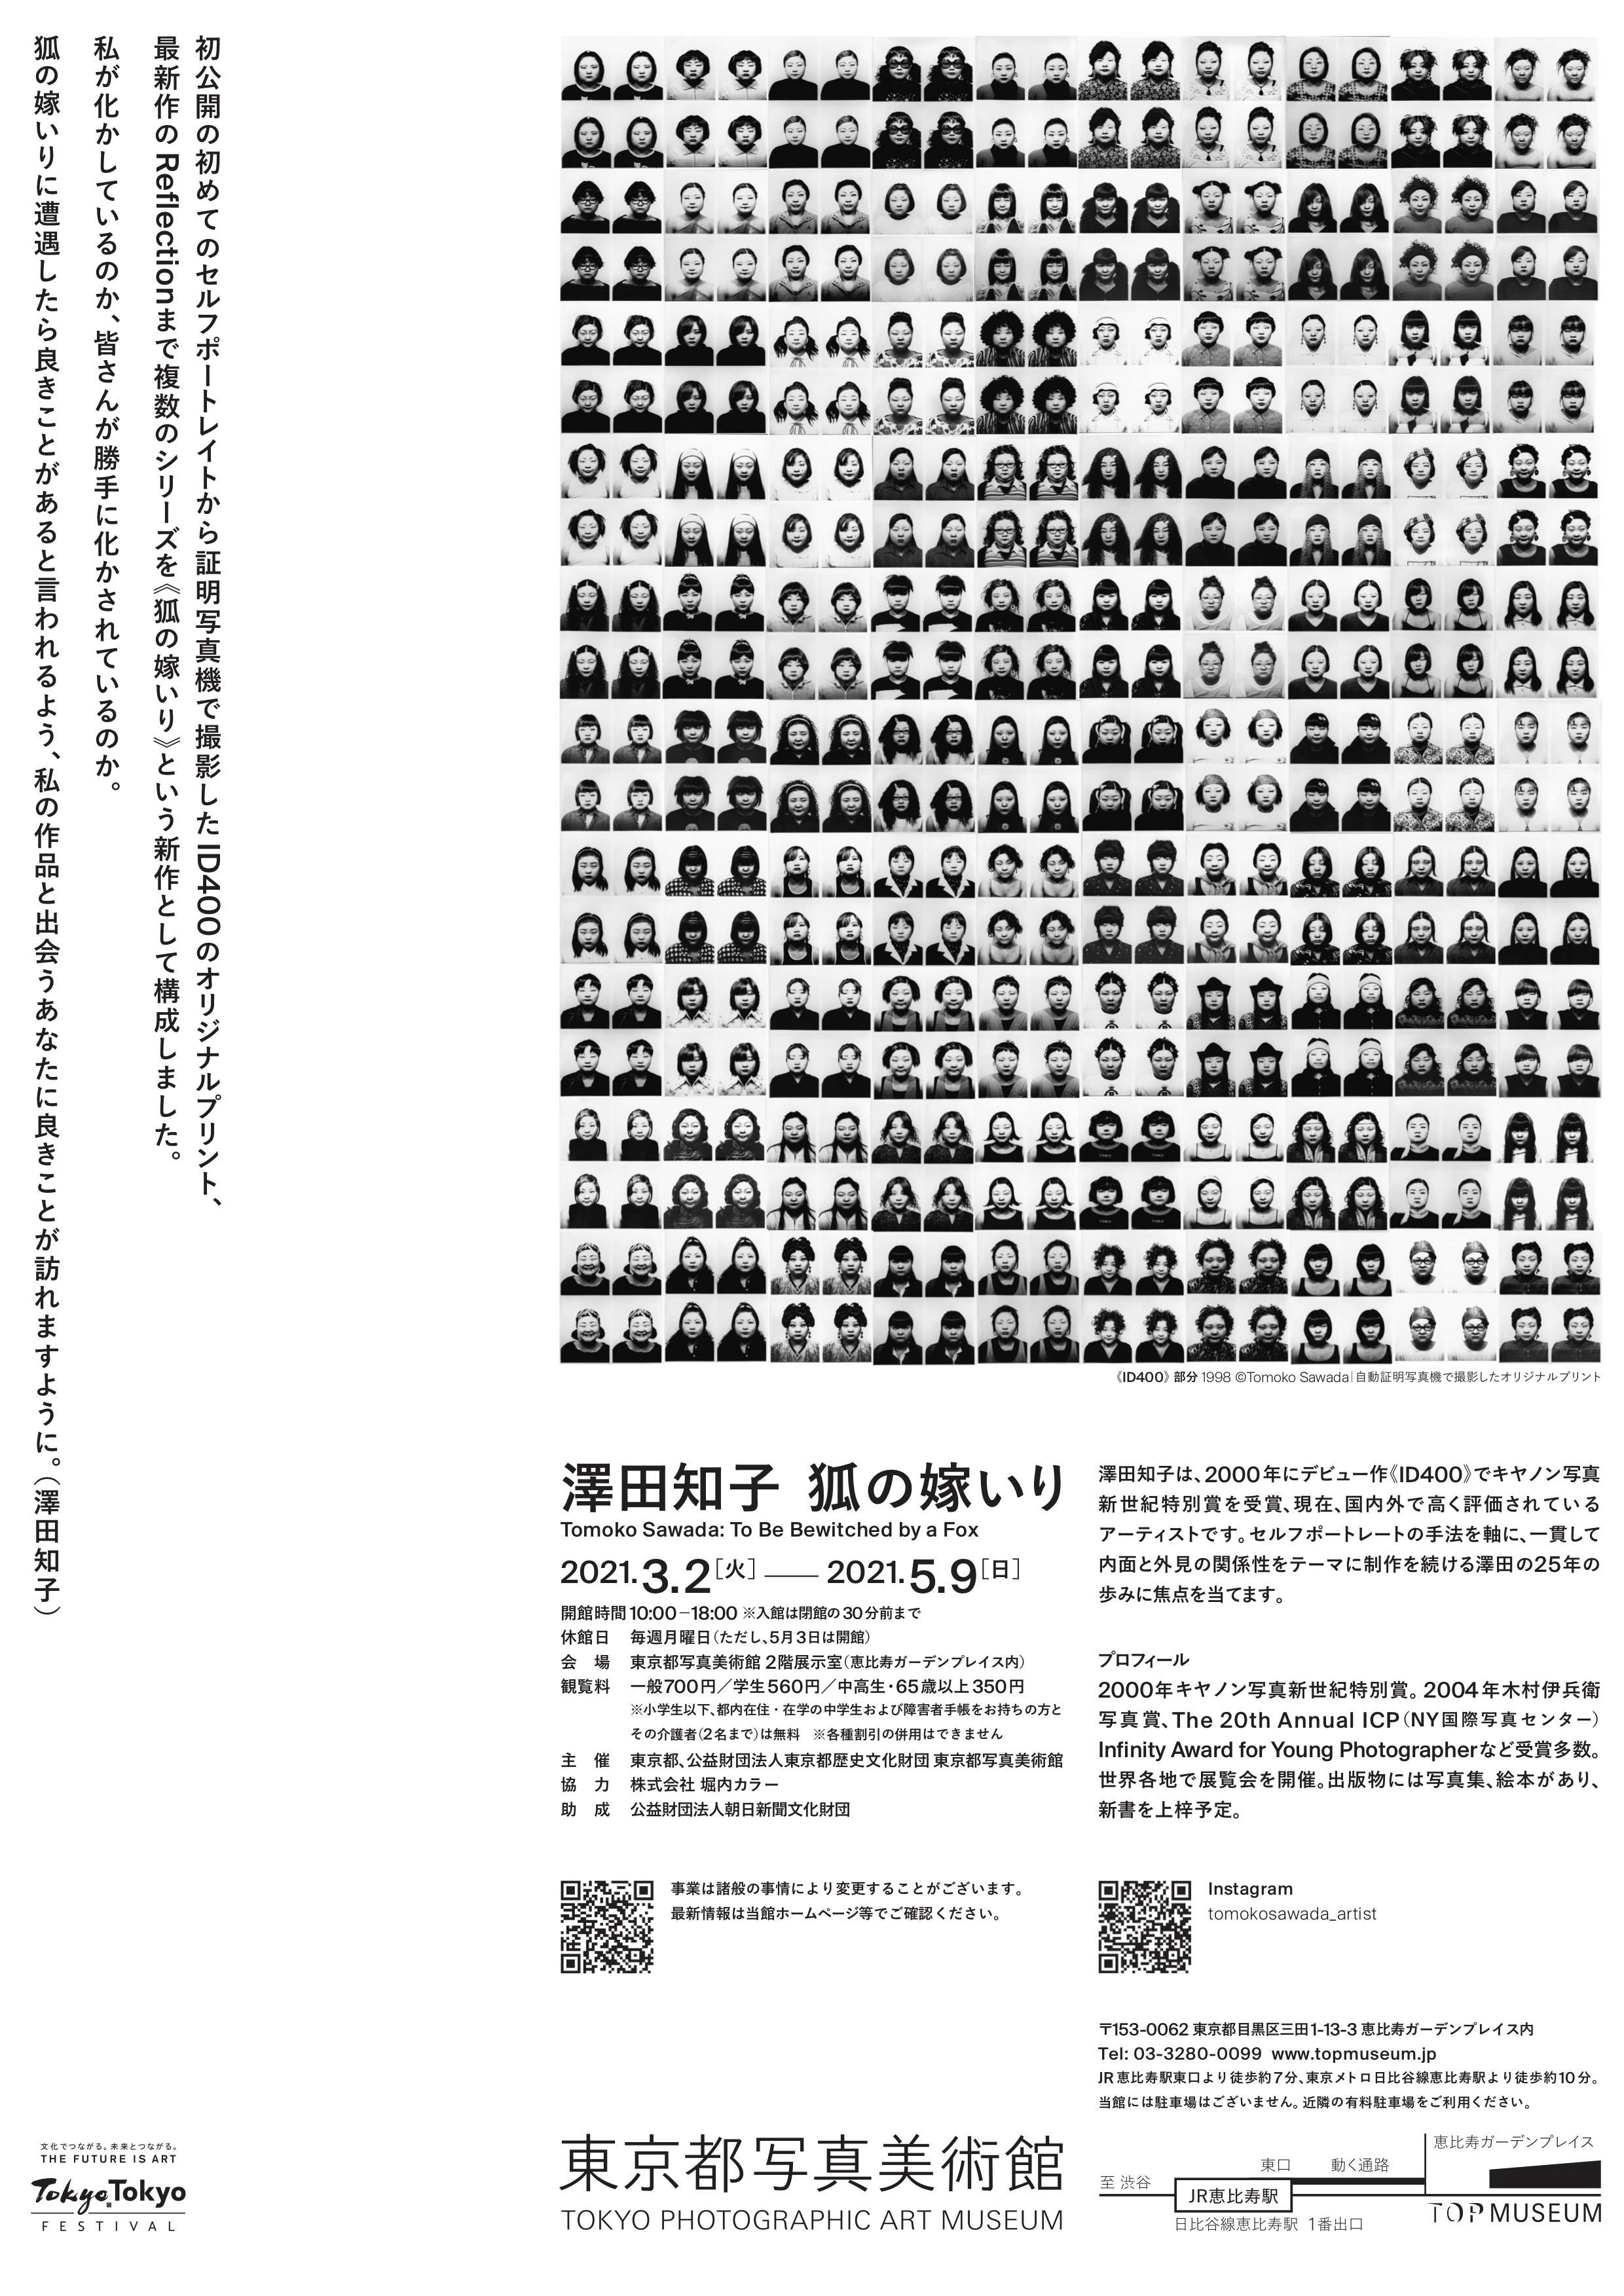 アーティスト 澤田 知子 の個展「狐の嫁いり」@東京都写真美術館。写真表現大学特別講師。デザインは浅野豪先生。写真表現大学講師。